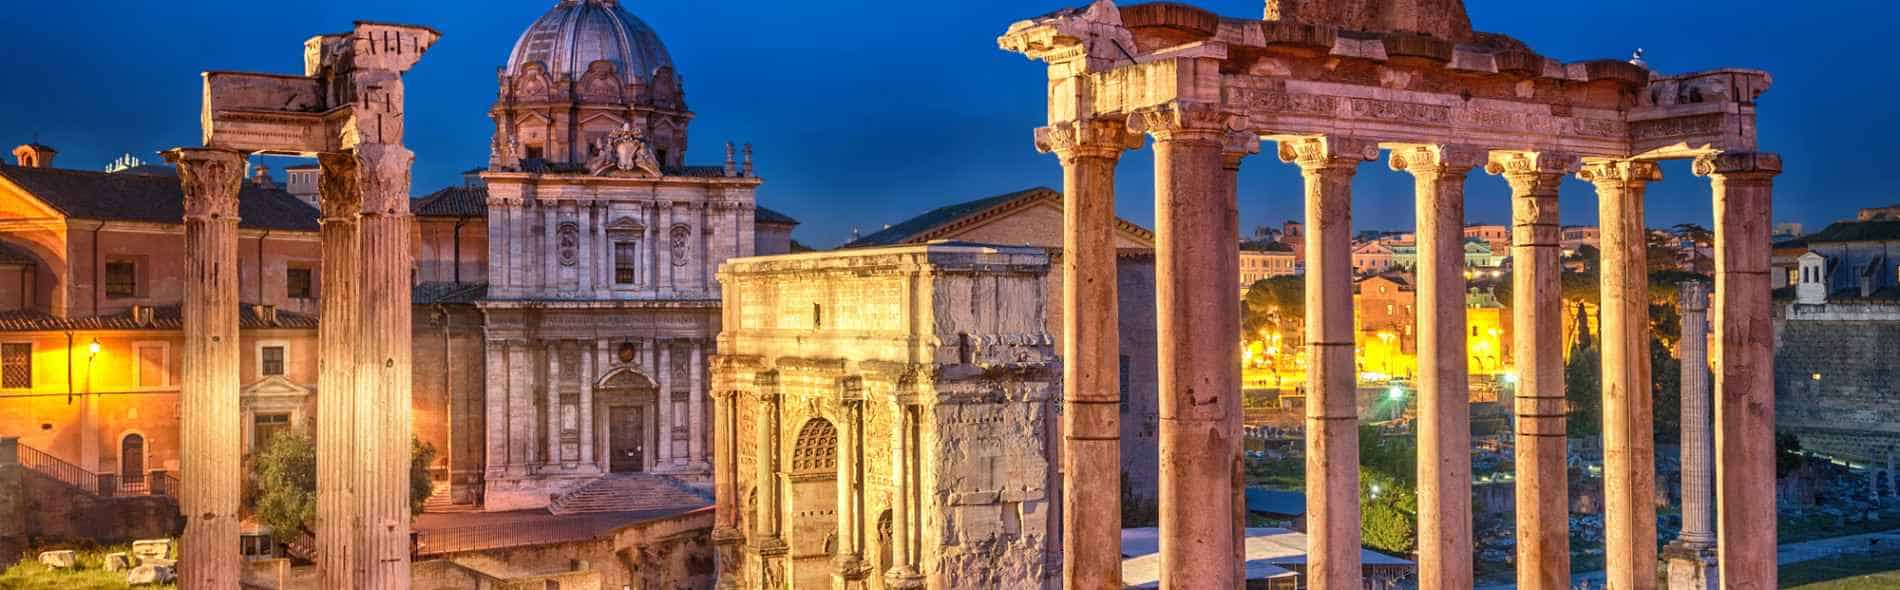 Fori romani, migliori tour guidati privati di Roma